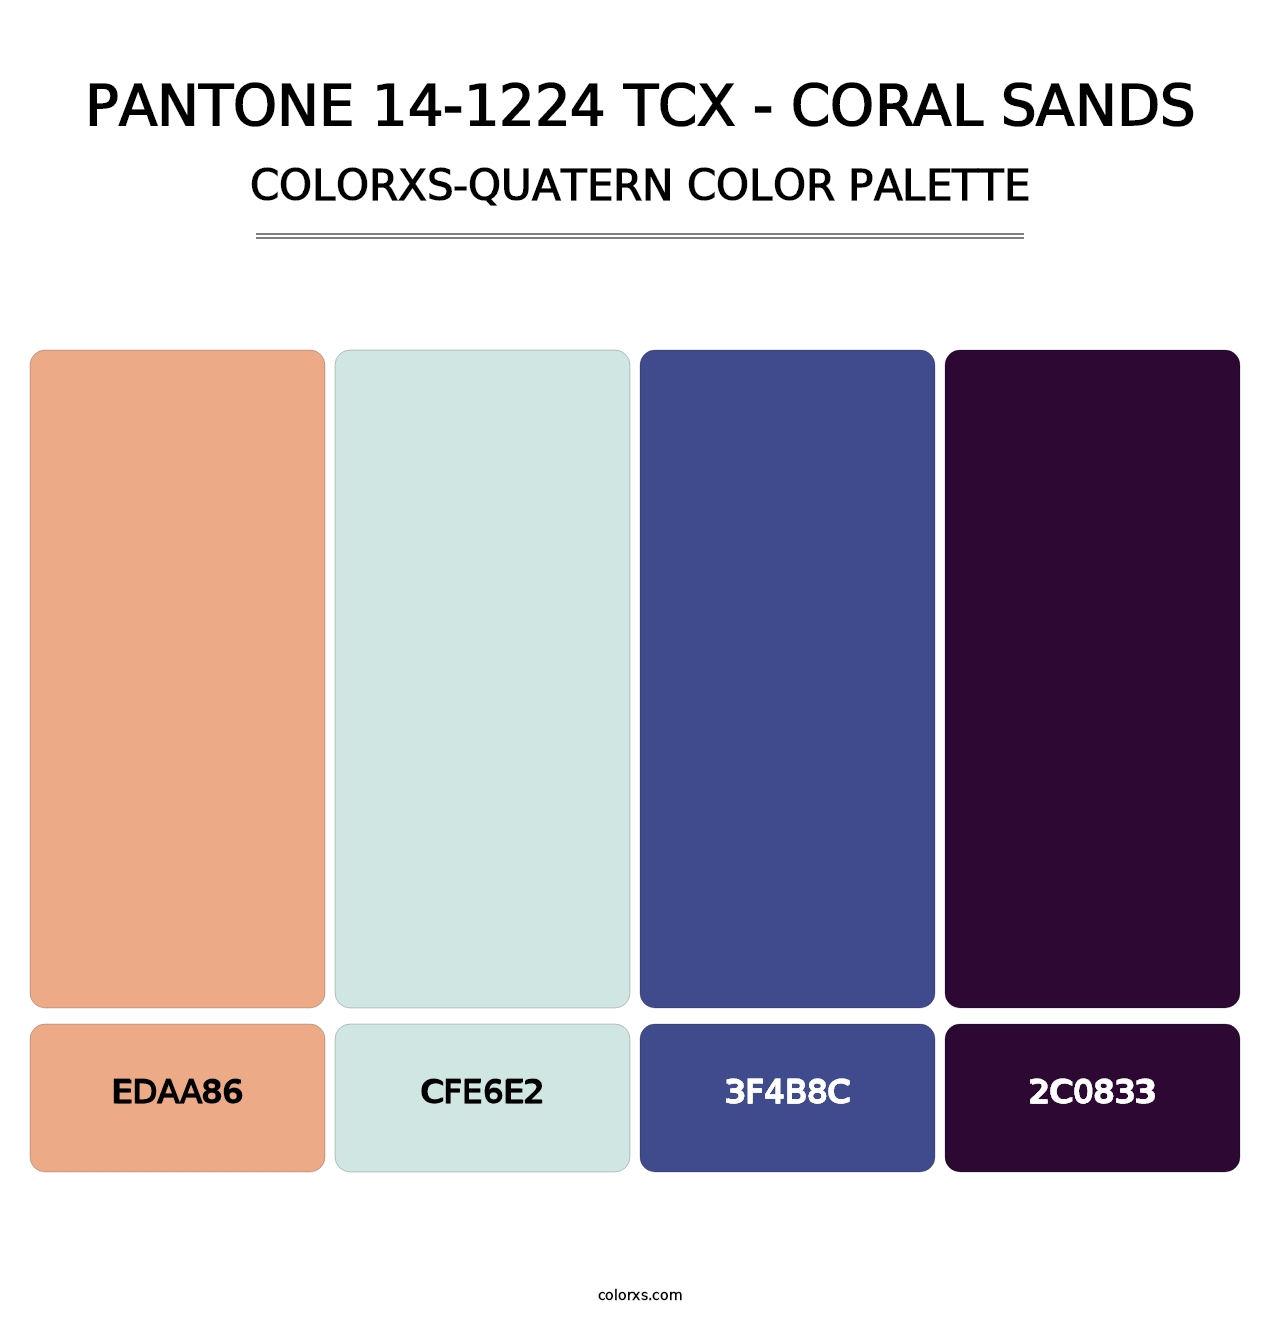 PANTONE 14-1224 TCX - Coral Sands - Colorxs Quatern Palette